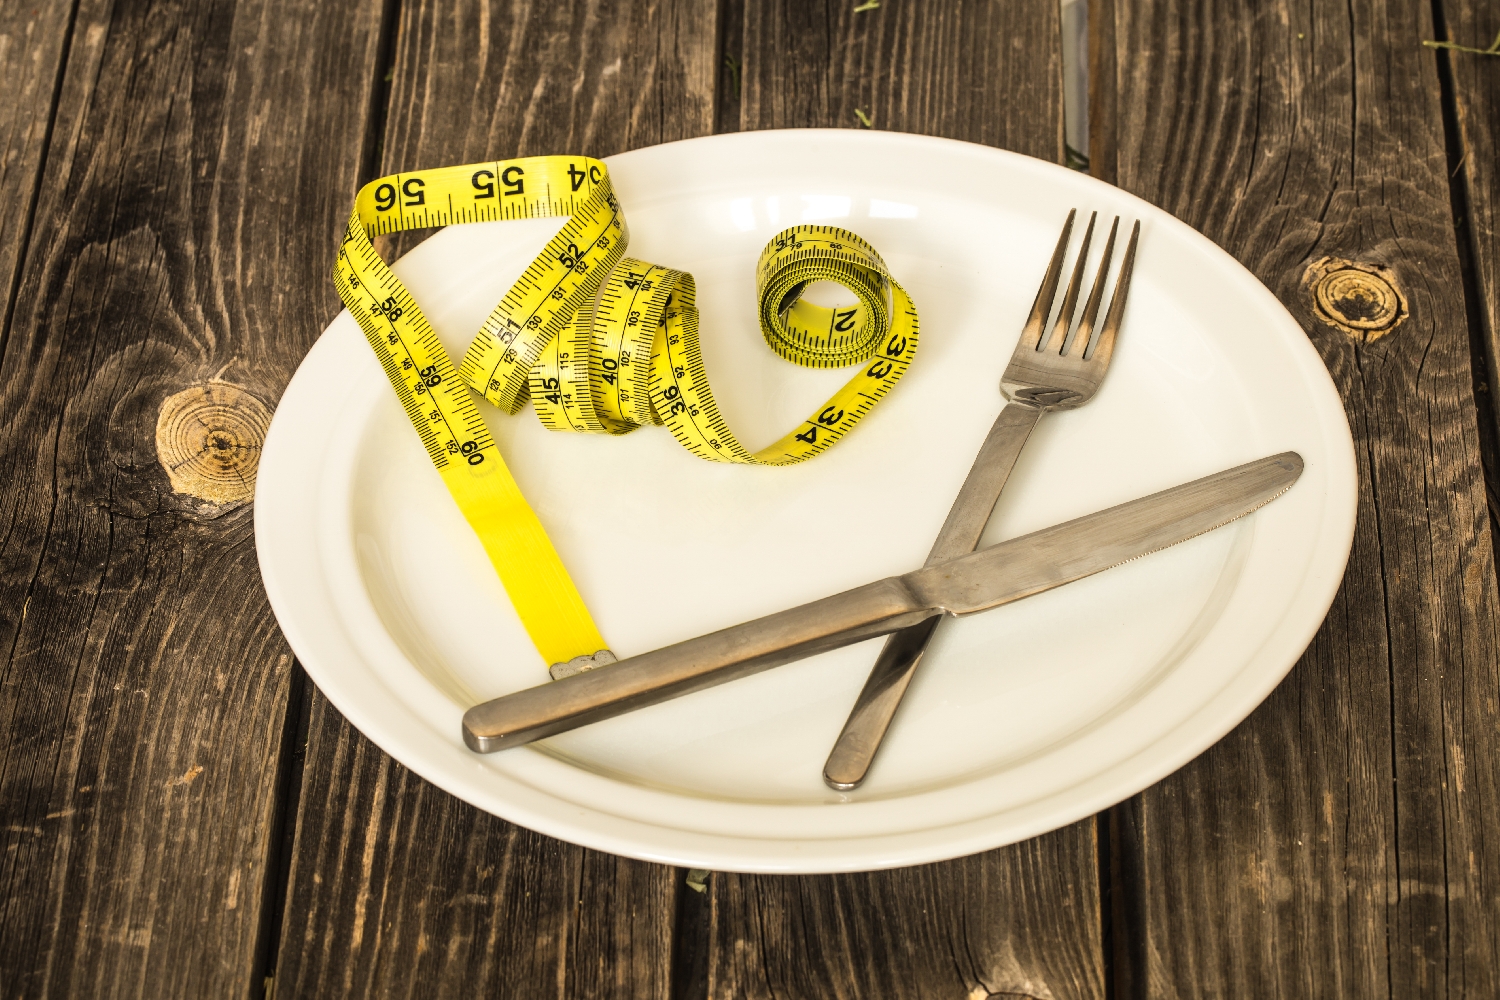 Jak pomoc někomu s poruchou přijmu potravy?